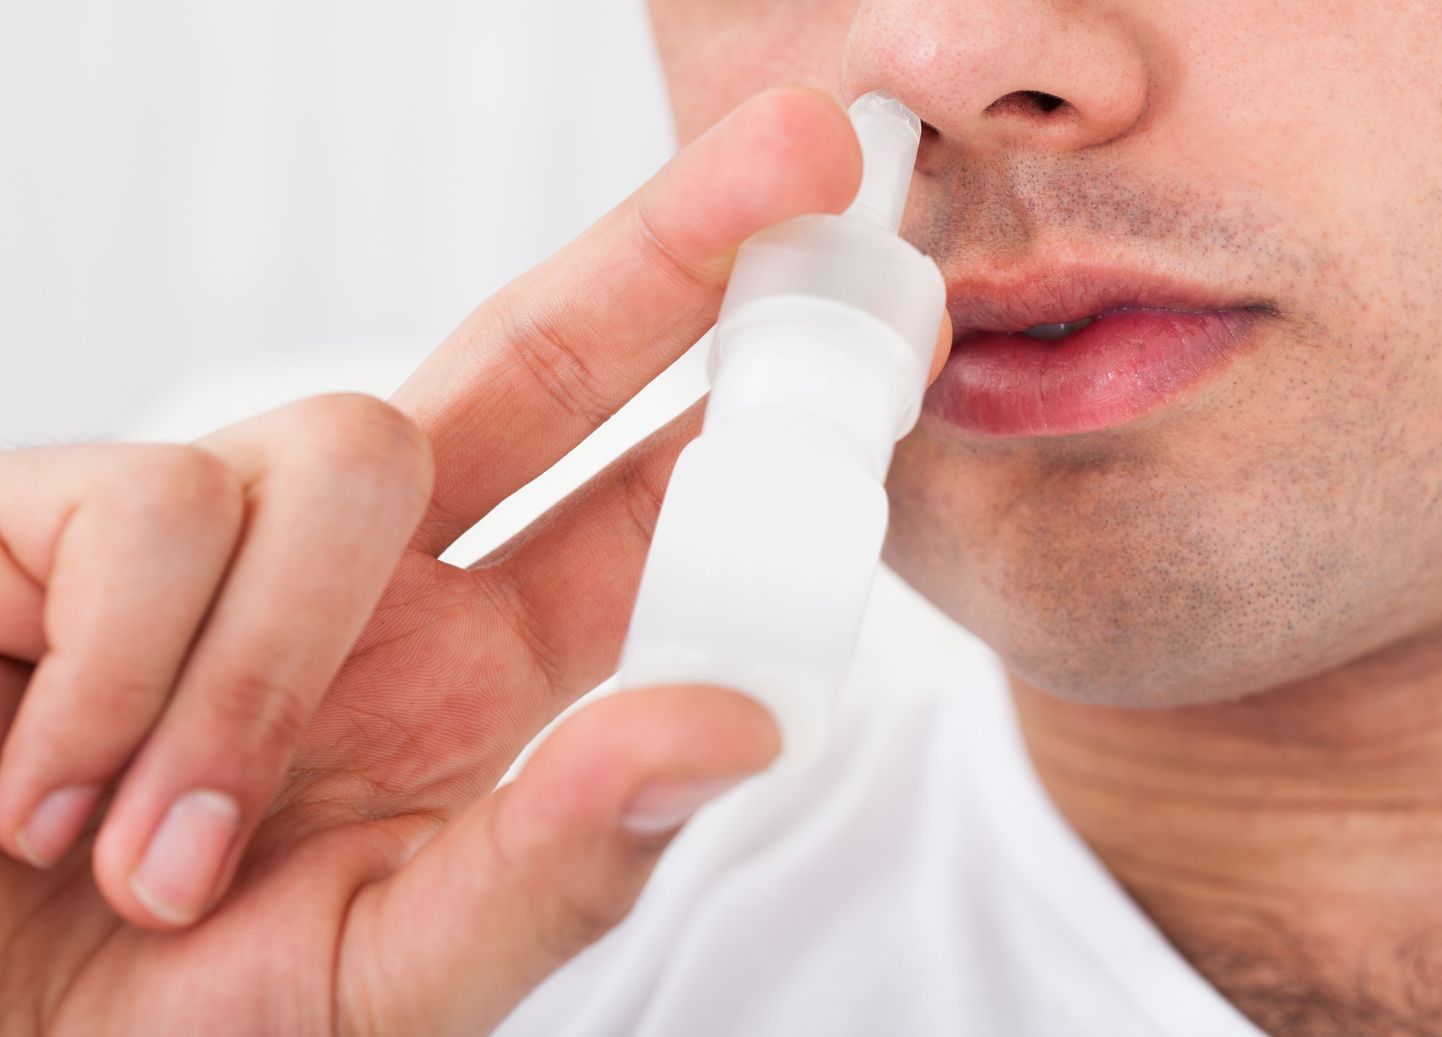 Tühja nina sündroomi sümptomiteks on kuivus, külmus ja lima vähesus.